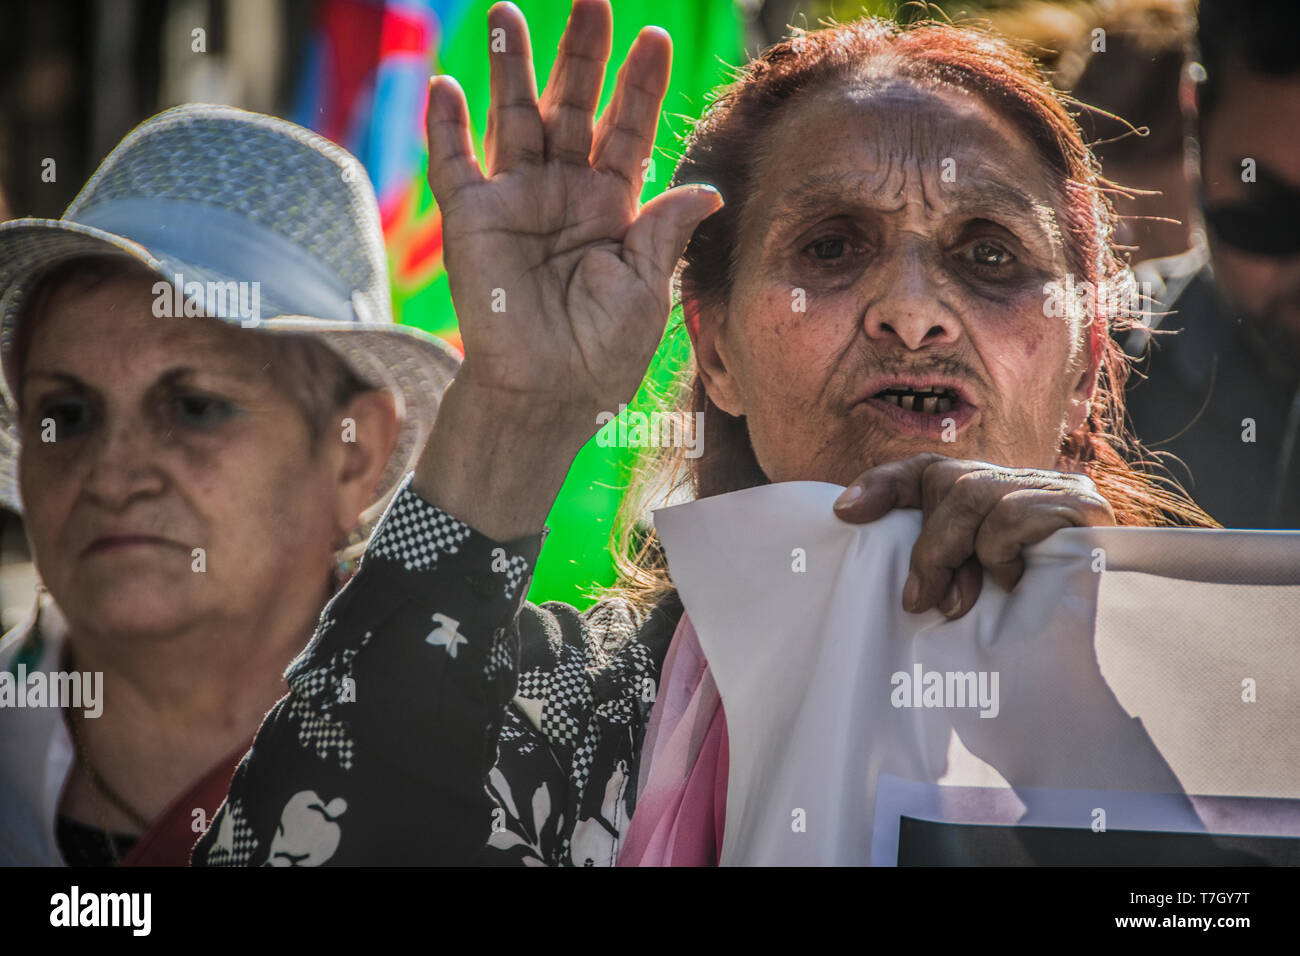 Eine Dame im März gegen Rassismus gegen Zigeuner gesehen. Zigeuner Marsch gegen die rassistischen Angriffe, die an der richtigen Stelle zu protestieren Stockfoto